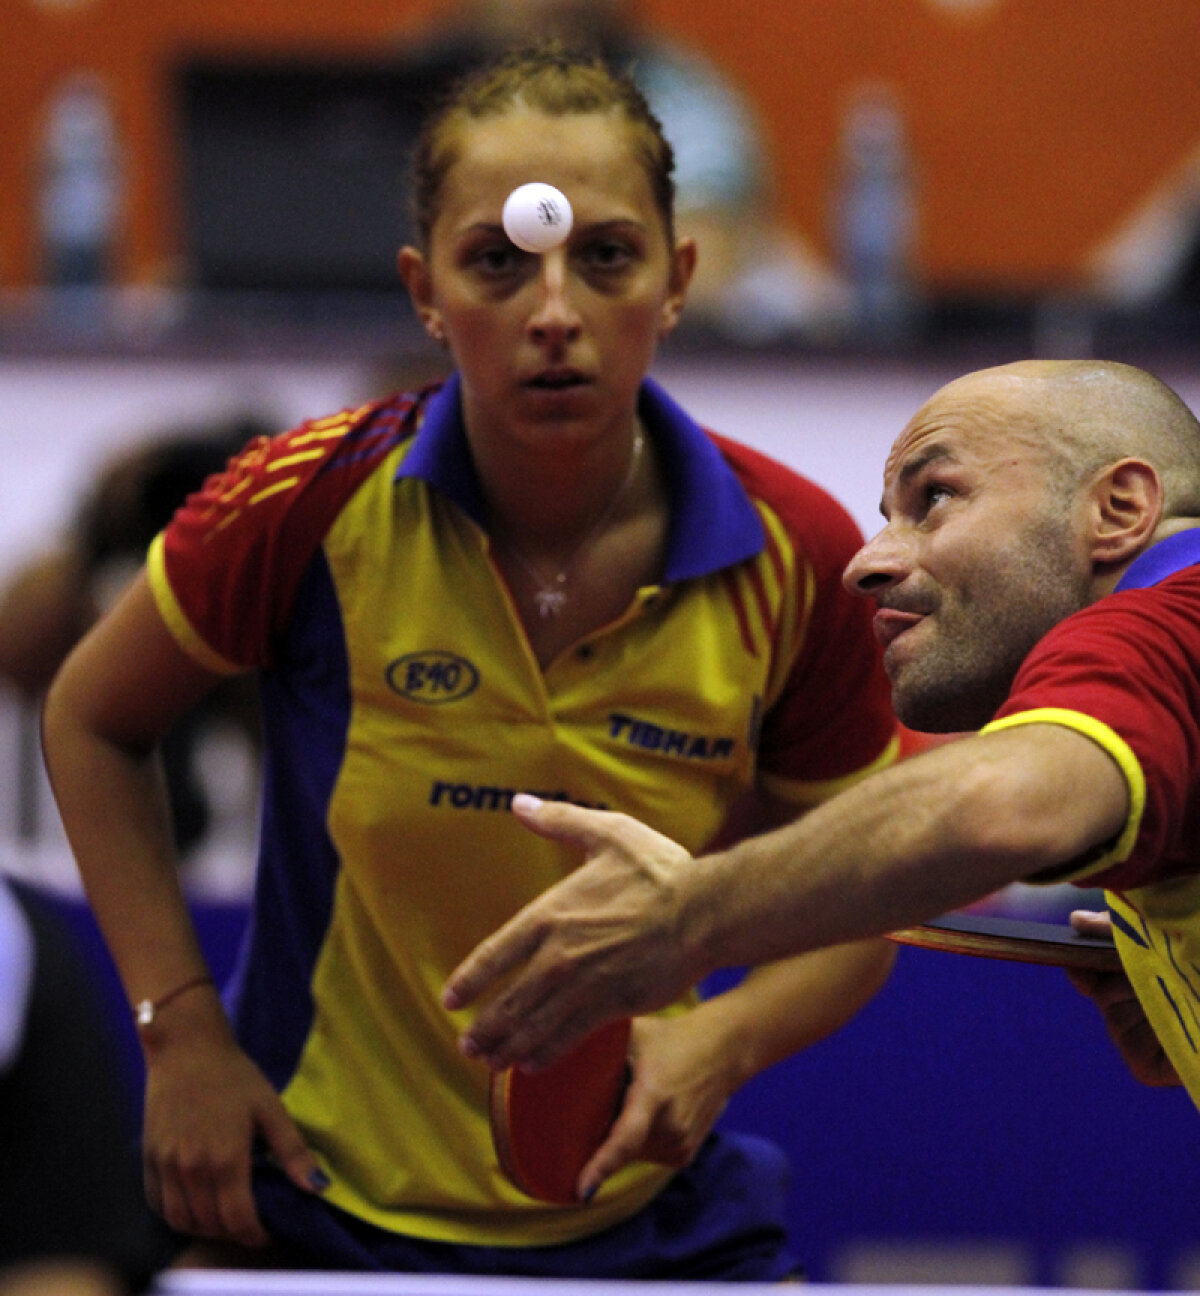 Învingători acasă » Elizabeta Samara şi Andrei Filimon şi-au păstrat titlul de campioni europeni cucerit în 2011